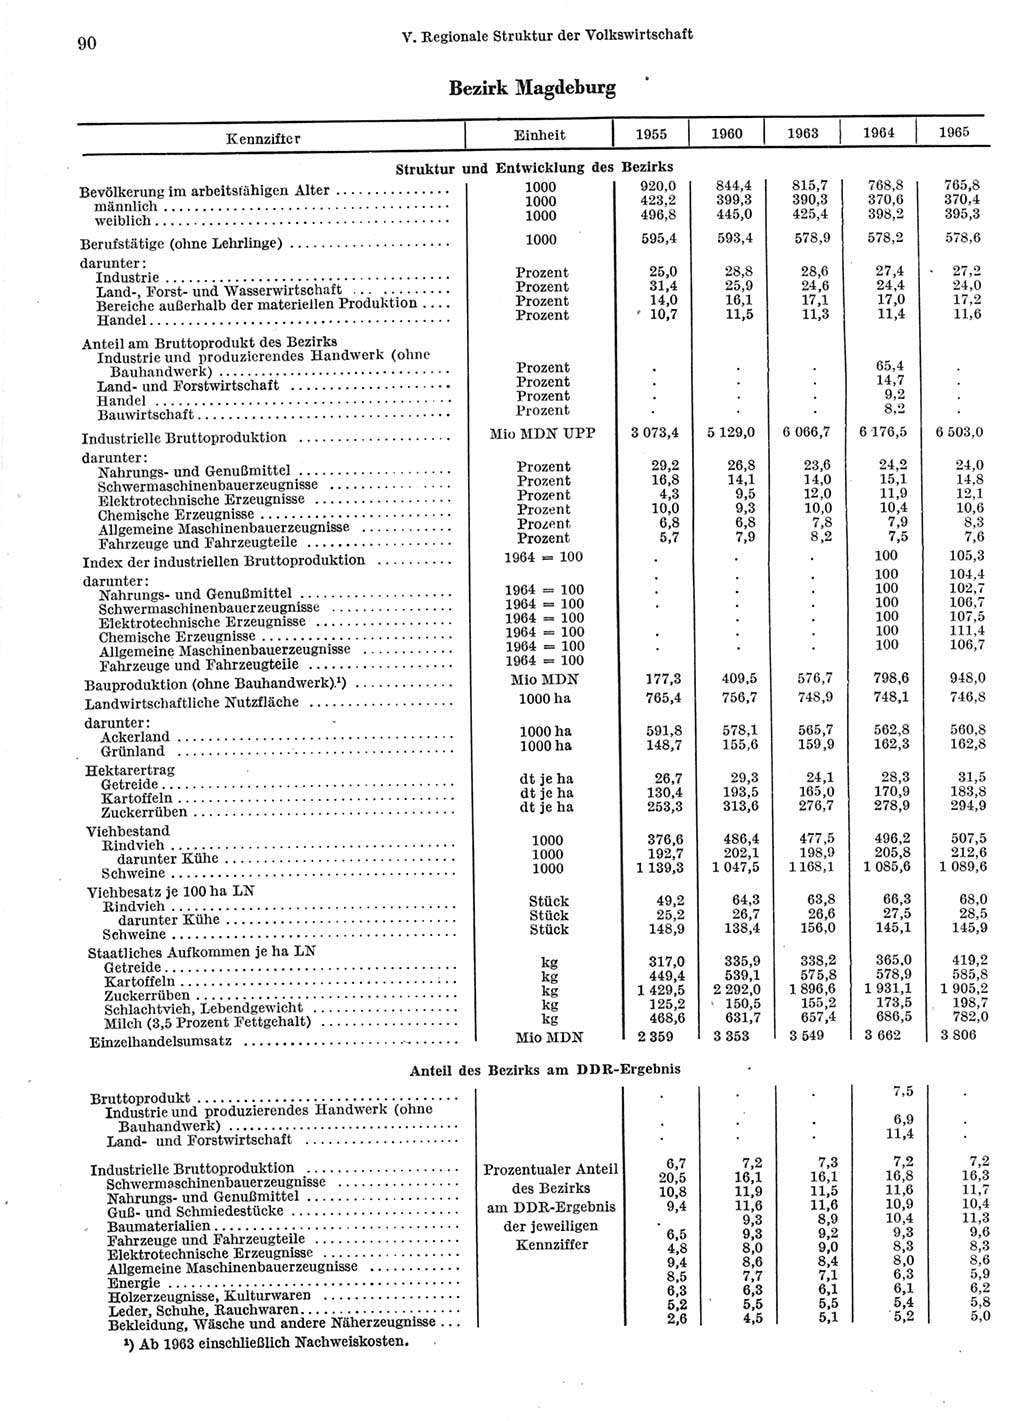 Statistisches Jahrbuch der Deutschen Demokratischen Republik (DDR) 1966, Seite 90 (Stat. Jb. DDR 1966, S. 90)